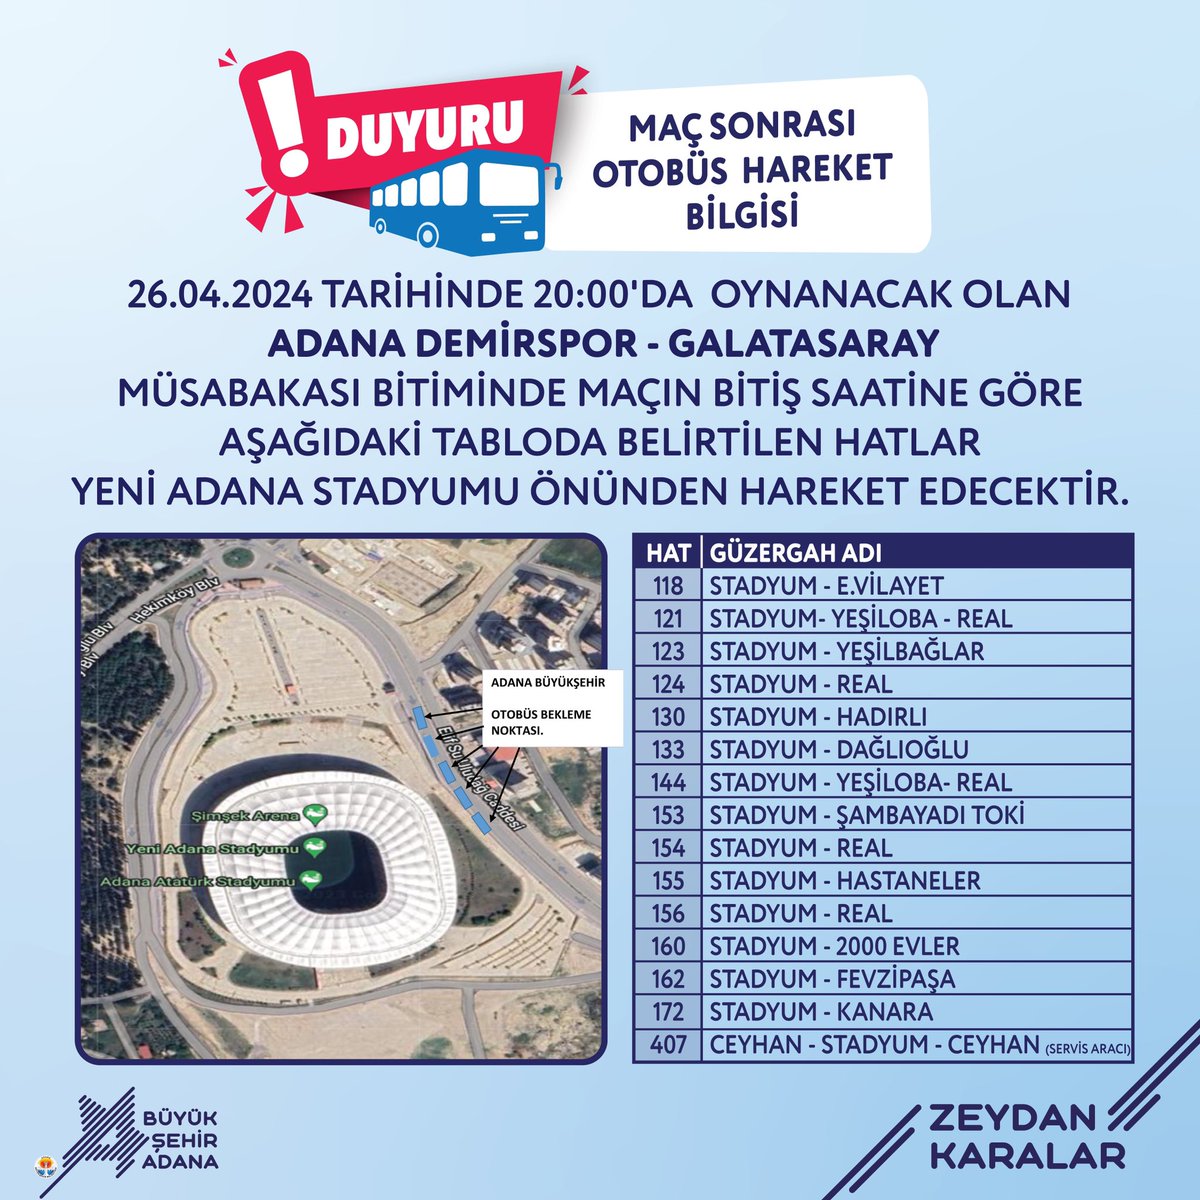 Duyuru! 📢 26 Nisan Cuma günü saat 20.00’de oynanacak Adana Demirspor - Galatasaray müsabakası bitiminde, maçın bitiş saatine göre tabloda belirtilen hatlar Yeni Adana Stadyumu önünden hareket edecektir.